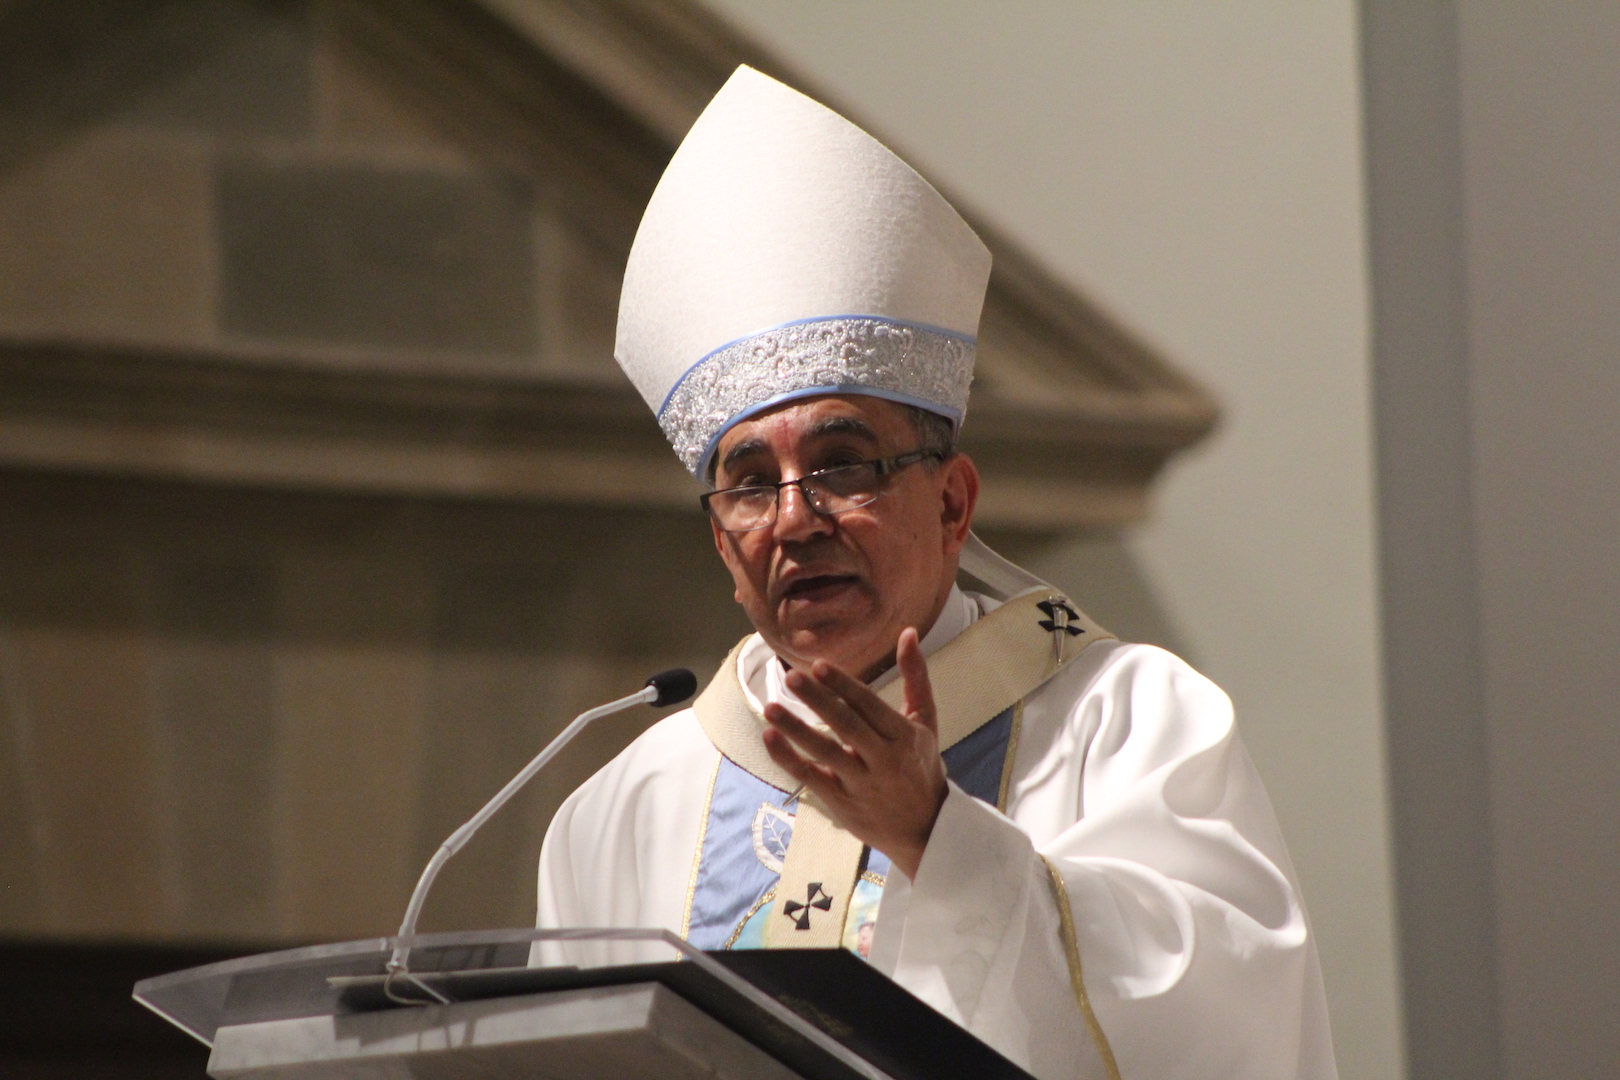 HOMILIA DE LA MISA CRISMAL 2019 - Arzobispo de Panamá